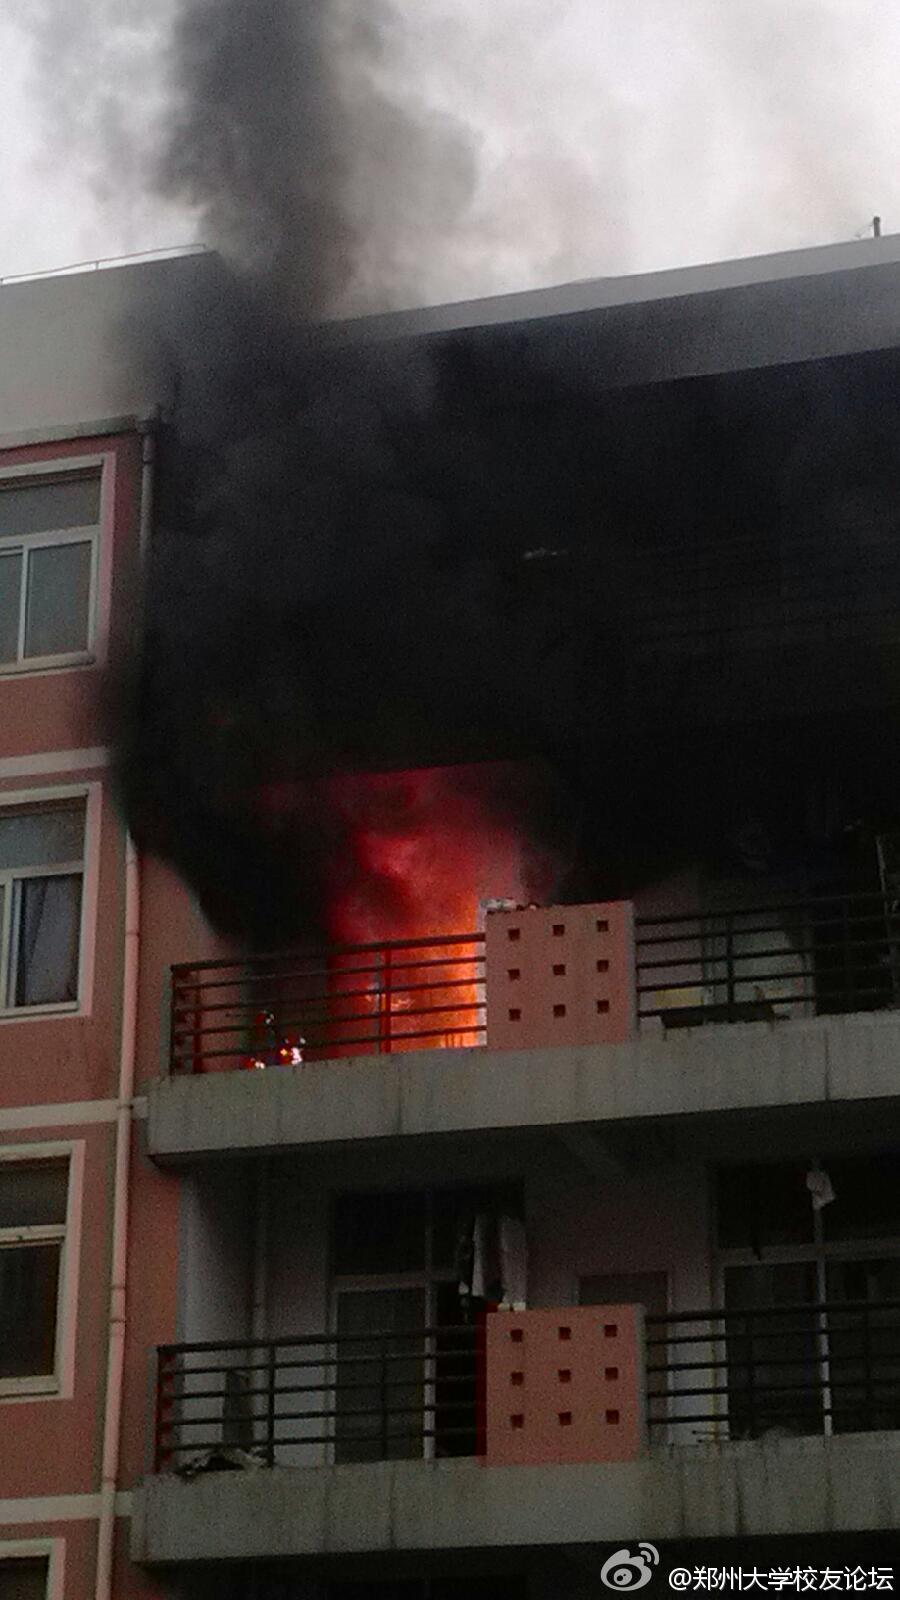 郑大宿舍楼今晨着火 无人员伤亡